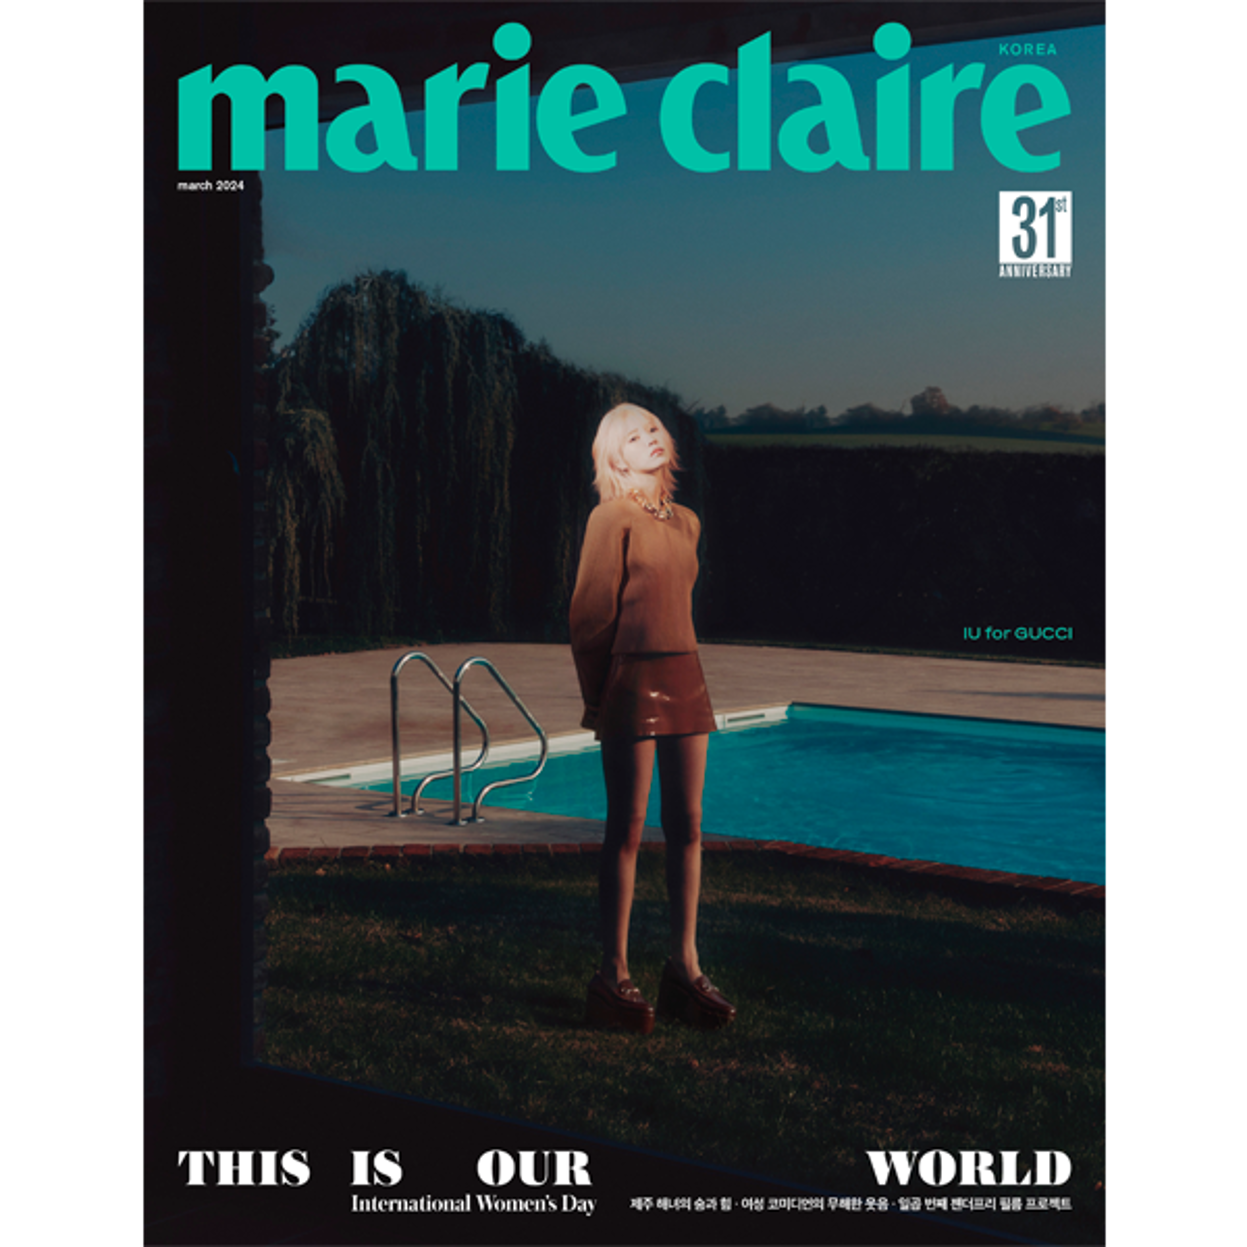 marie claire マリ·クレール 3月号 C型 (表紙:IU / 主要記事:IU、パク·ジヒョン、BoA、キム·ジウォン、パウ、キス·オブ·ライフ)